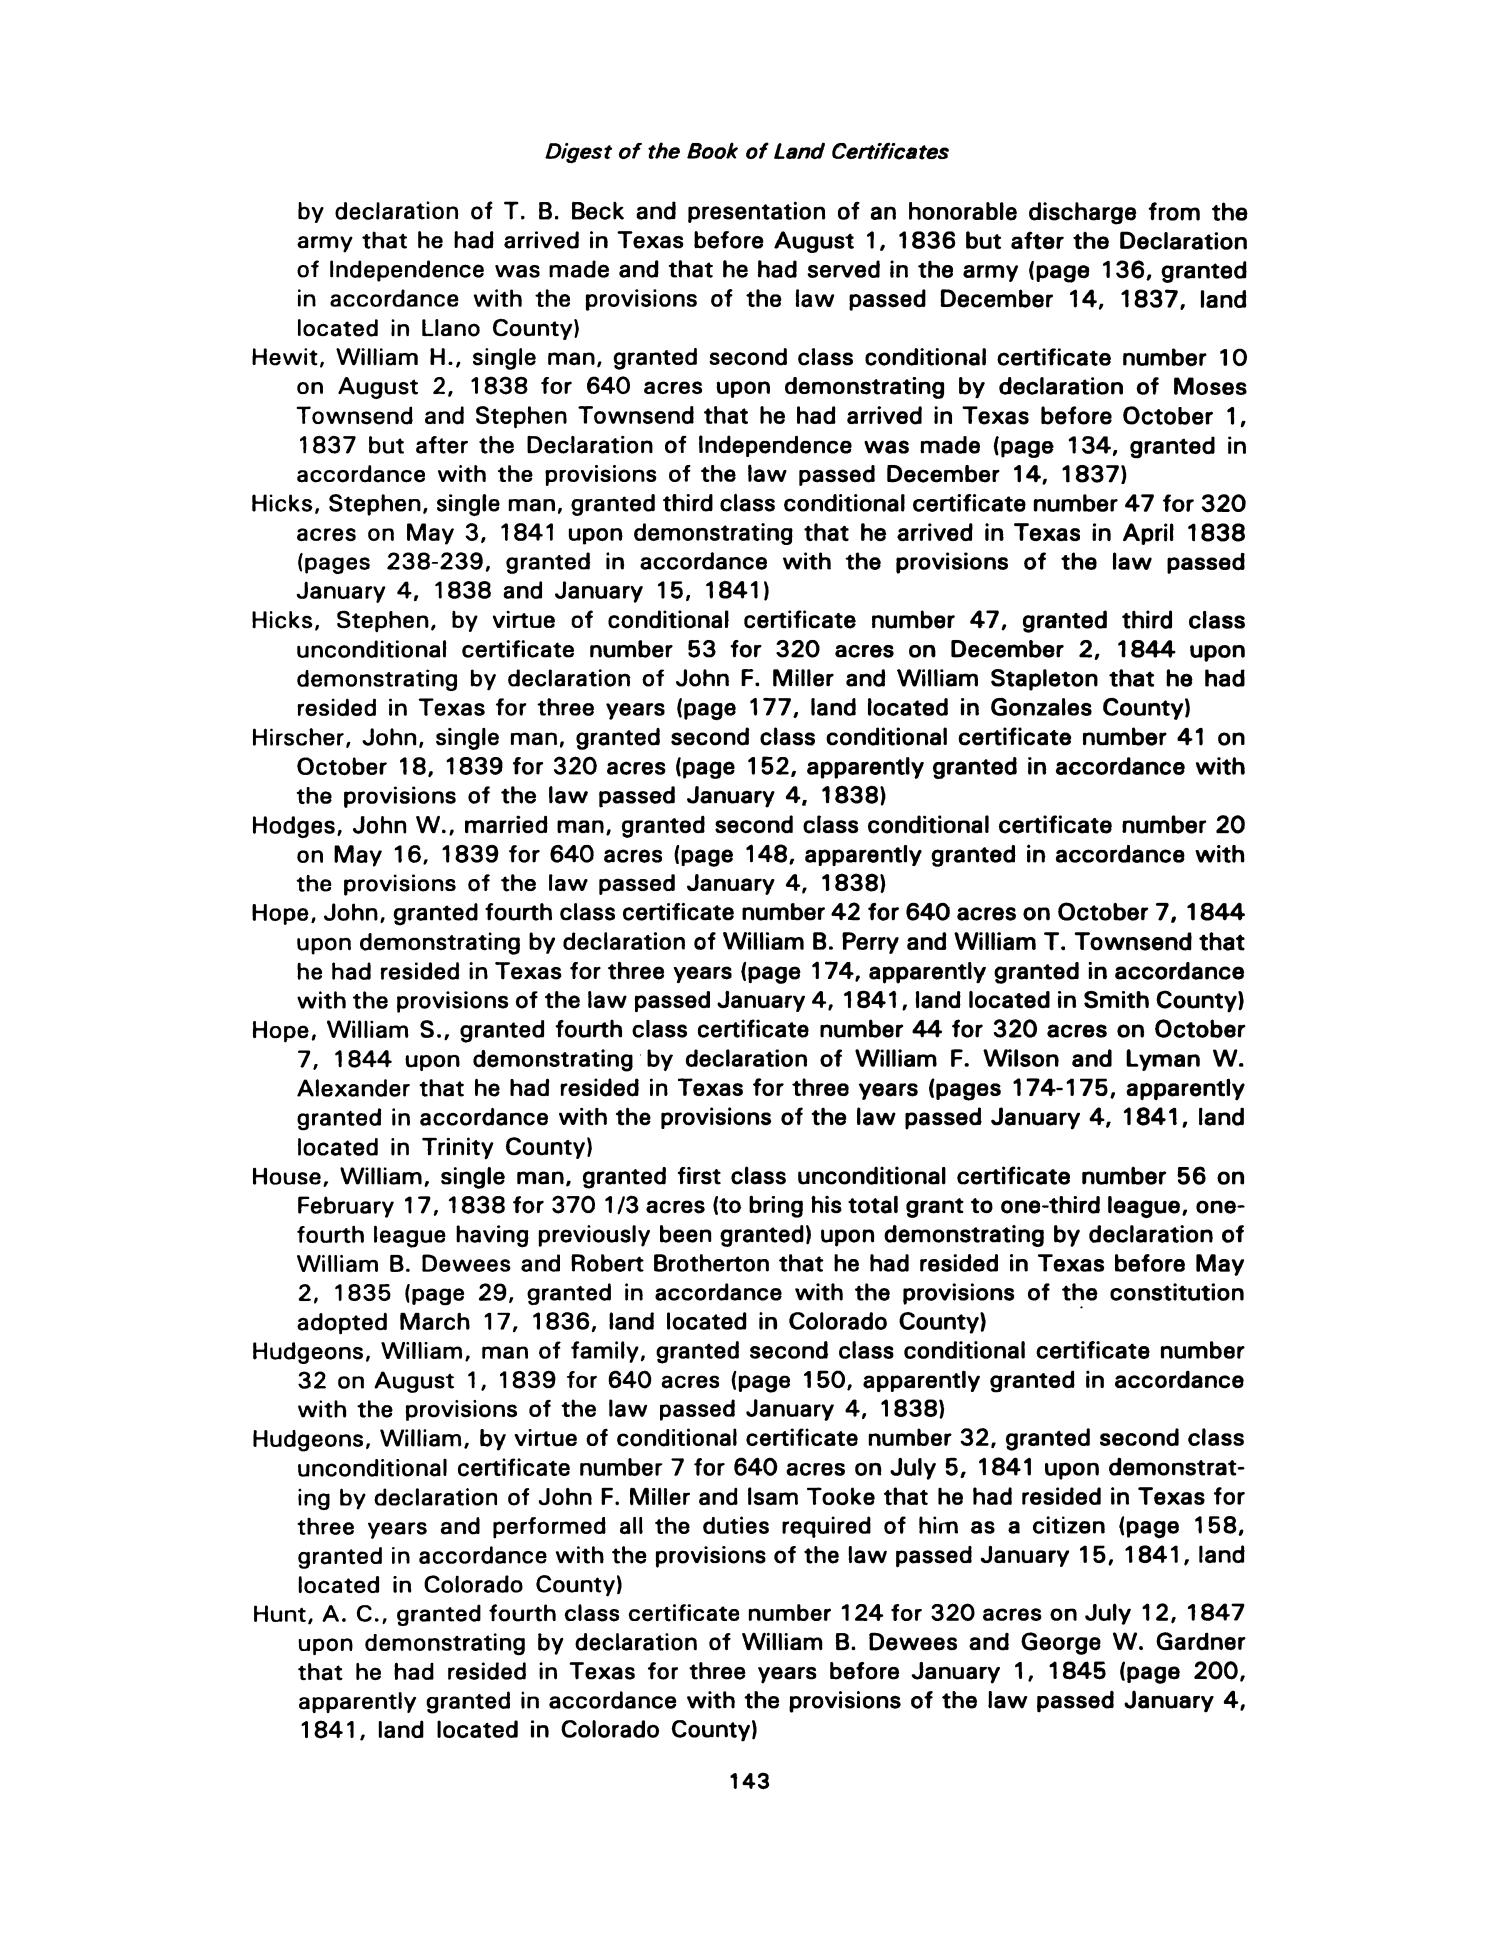 Nesbitt Memorial Library Journal, Volume 3, Number 3, September 1993
                                                
                                                    143
                                                